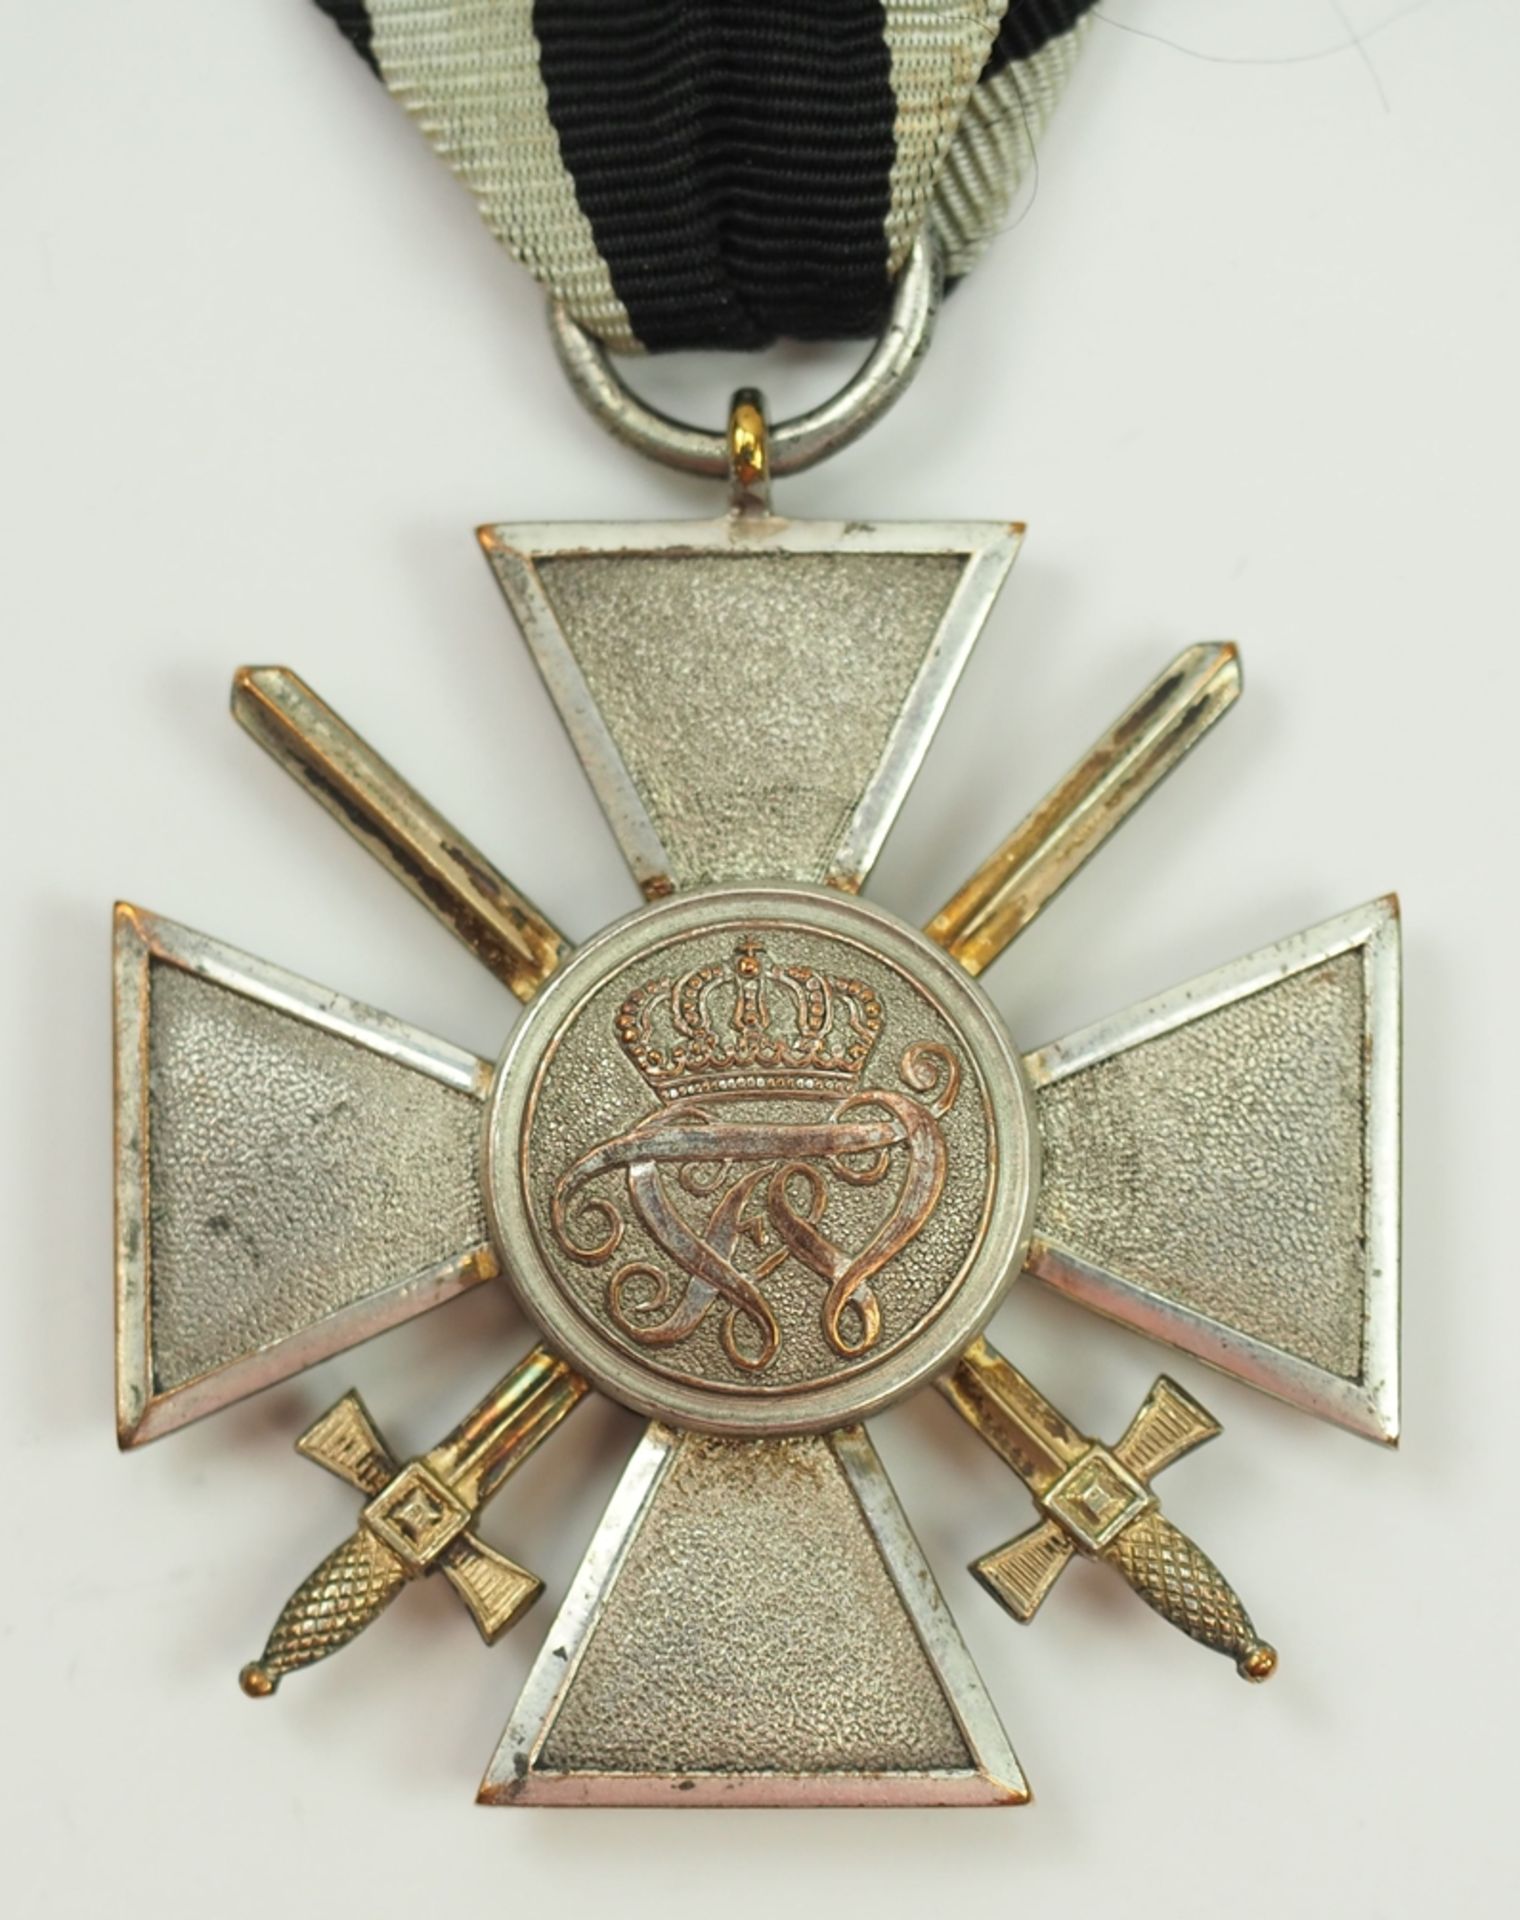 Sammleranfertigung Preussen: Roter Adler Orden, 4. Modell (1885-1918), 4. Klasse mit Schwertern. - Bild 3 aus 3